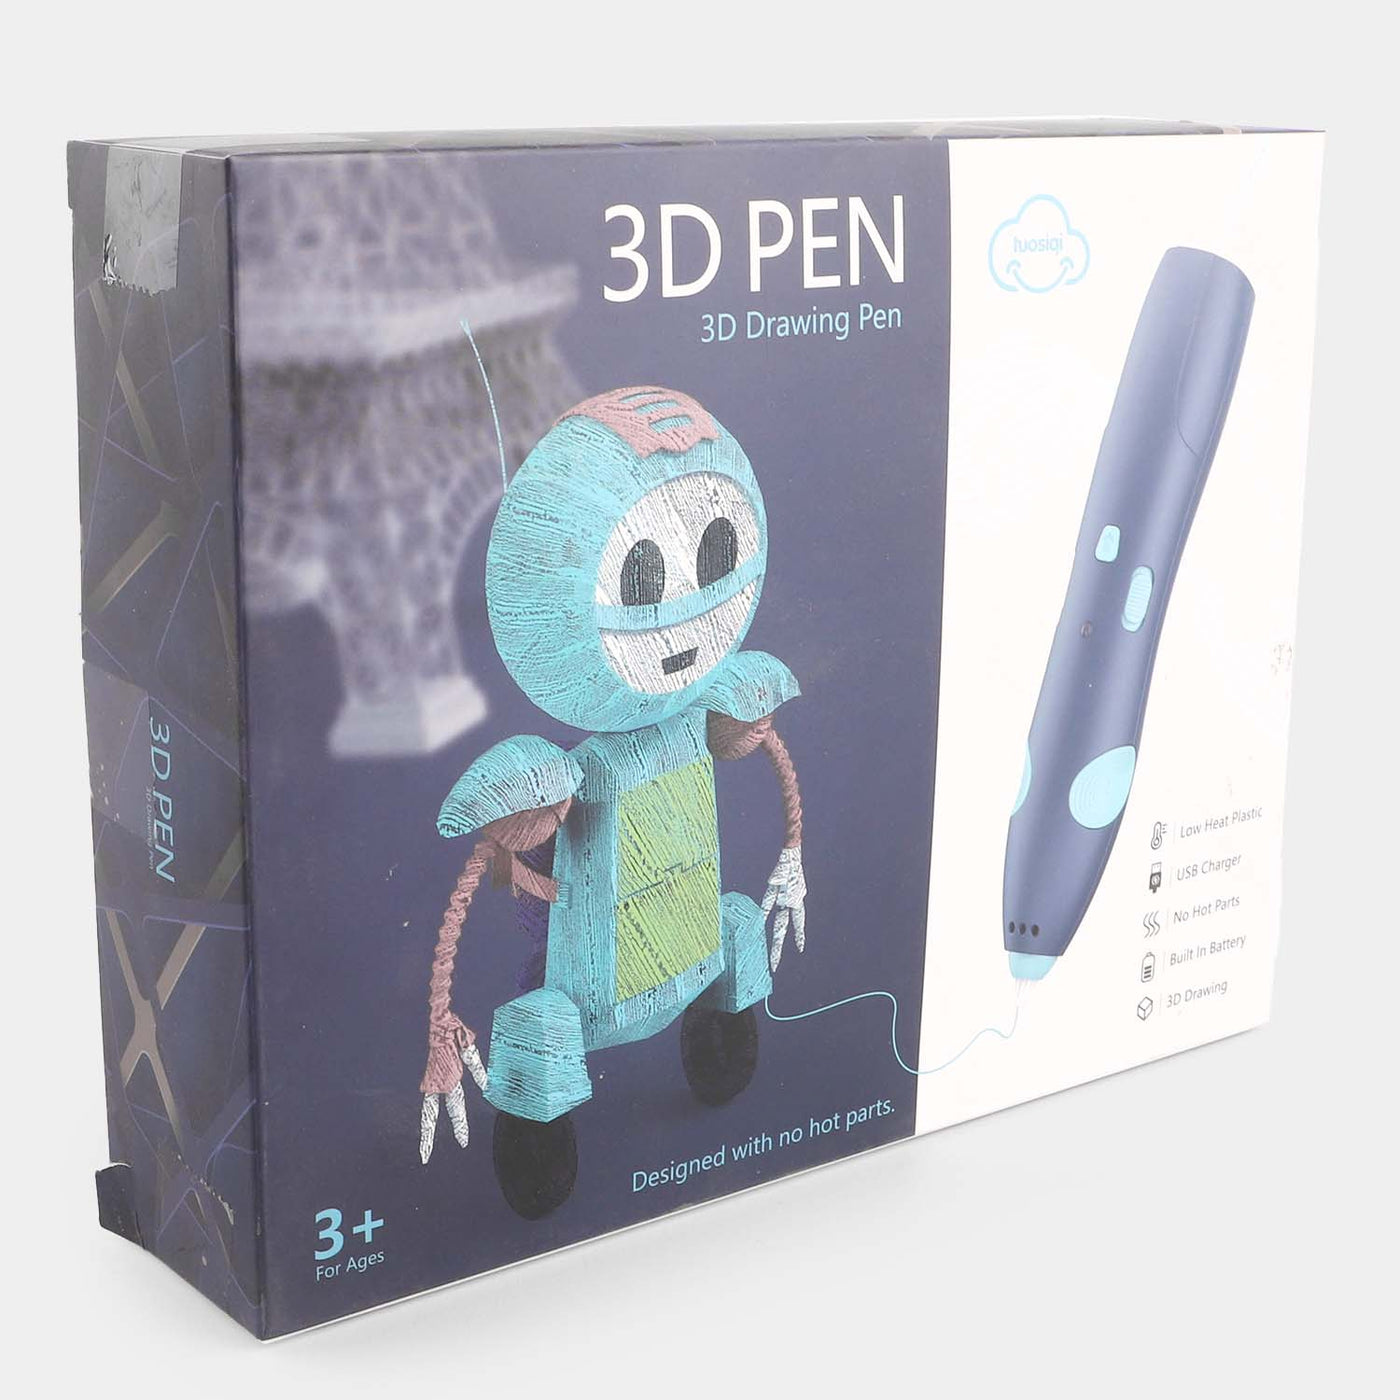 3D Printing Pen For Kids